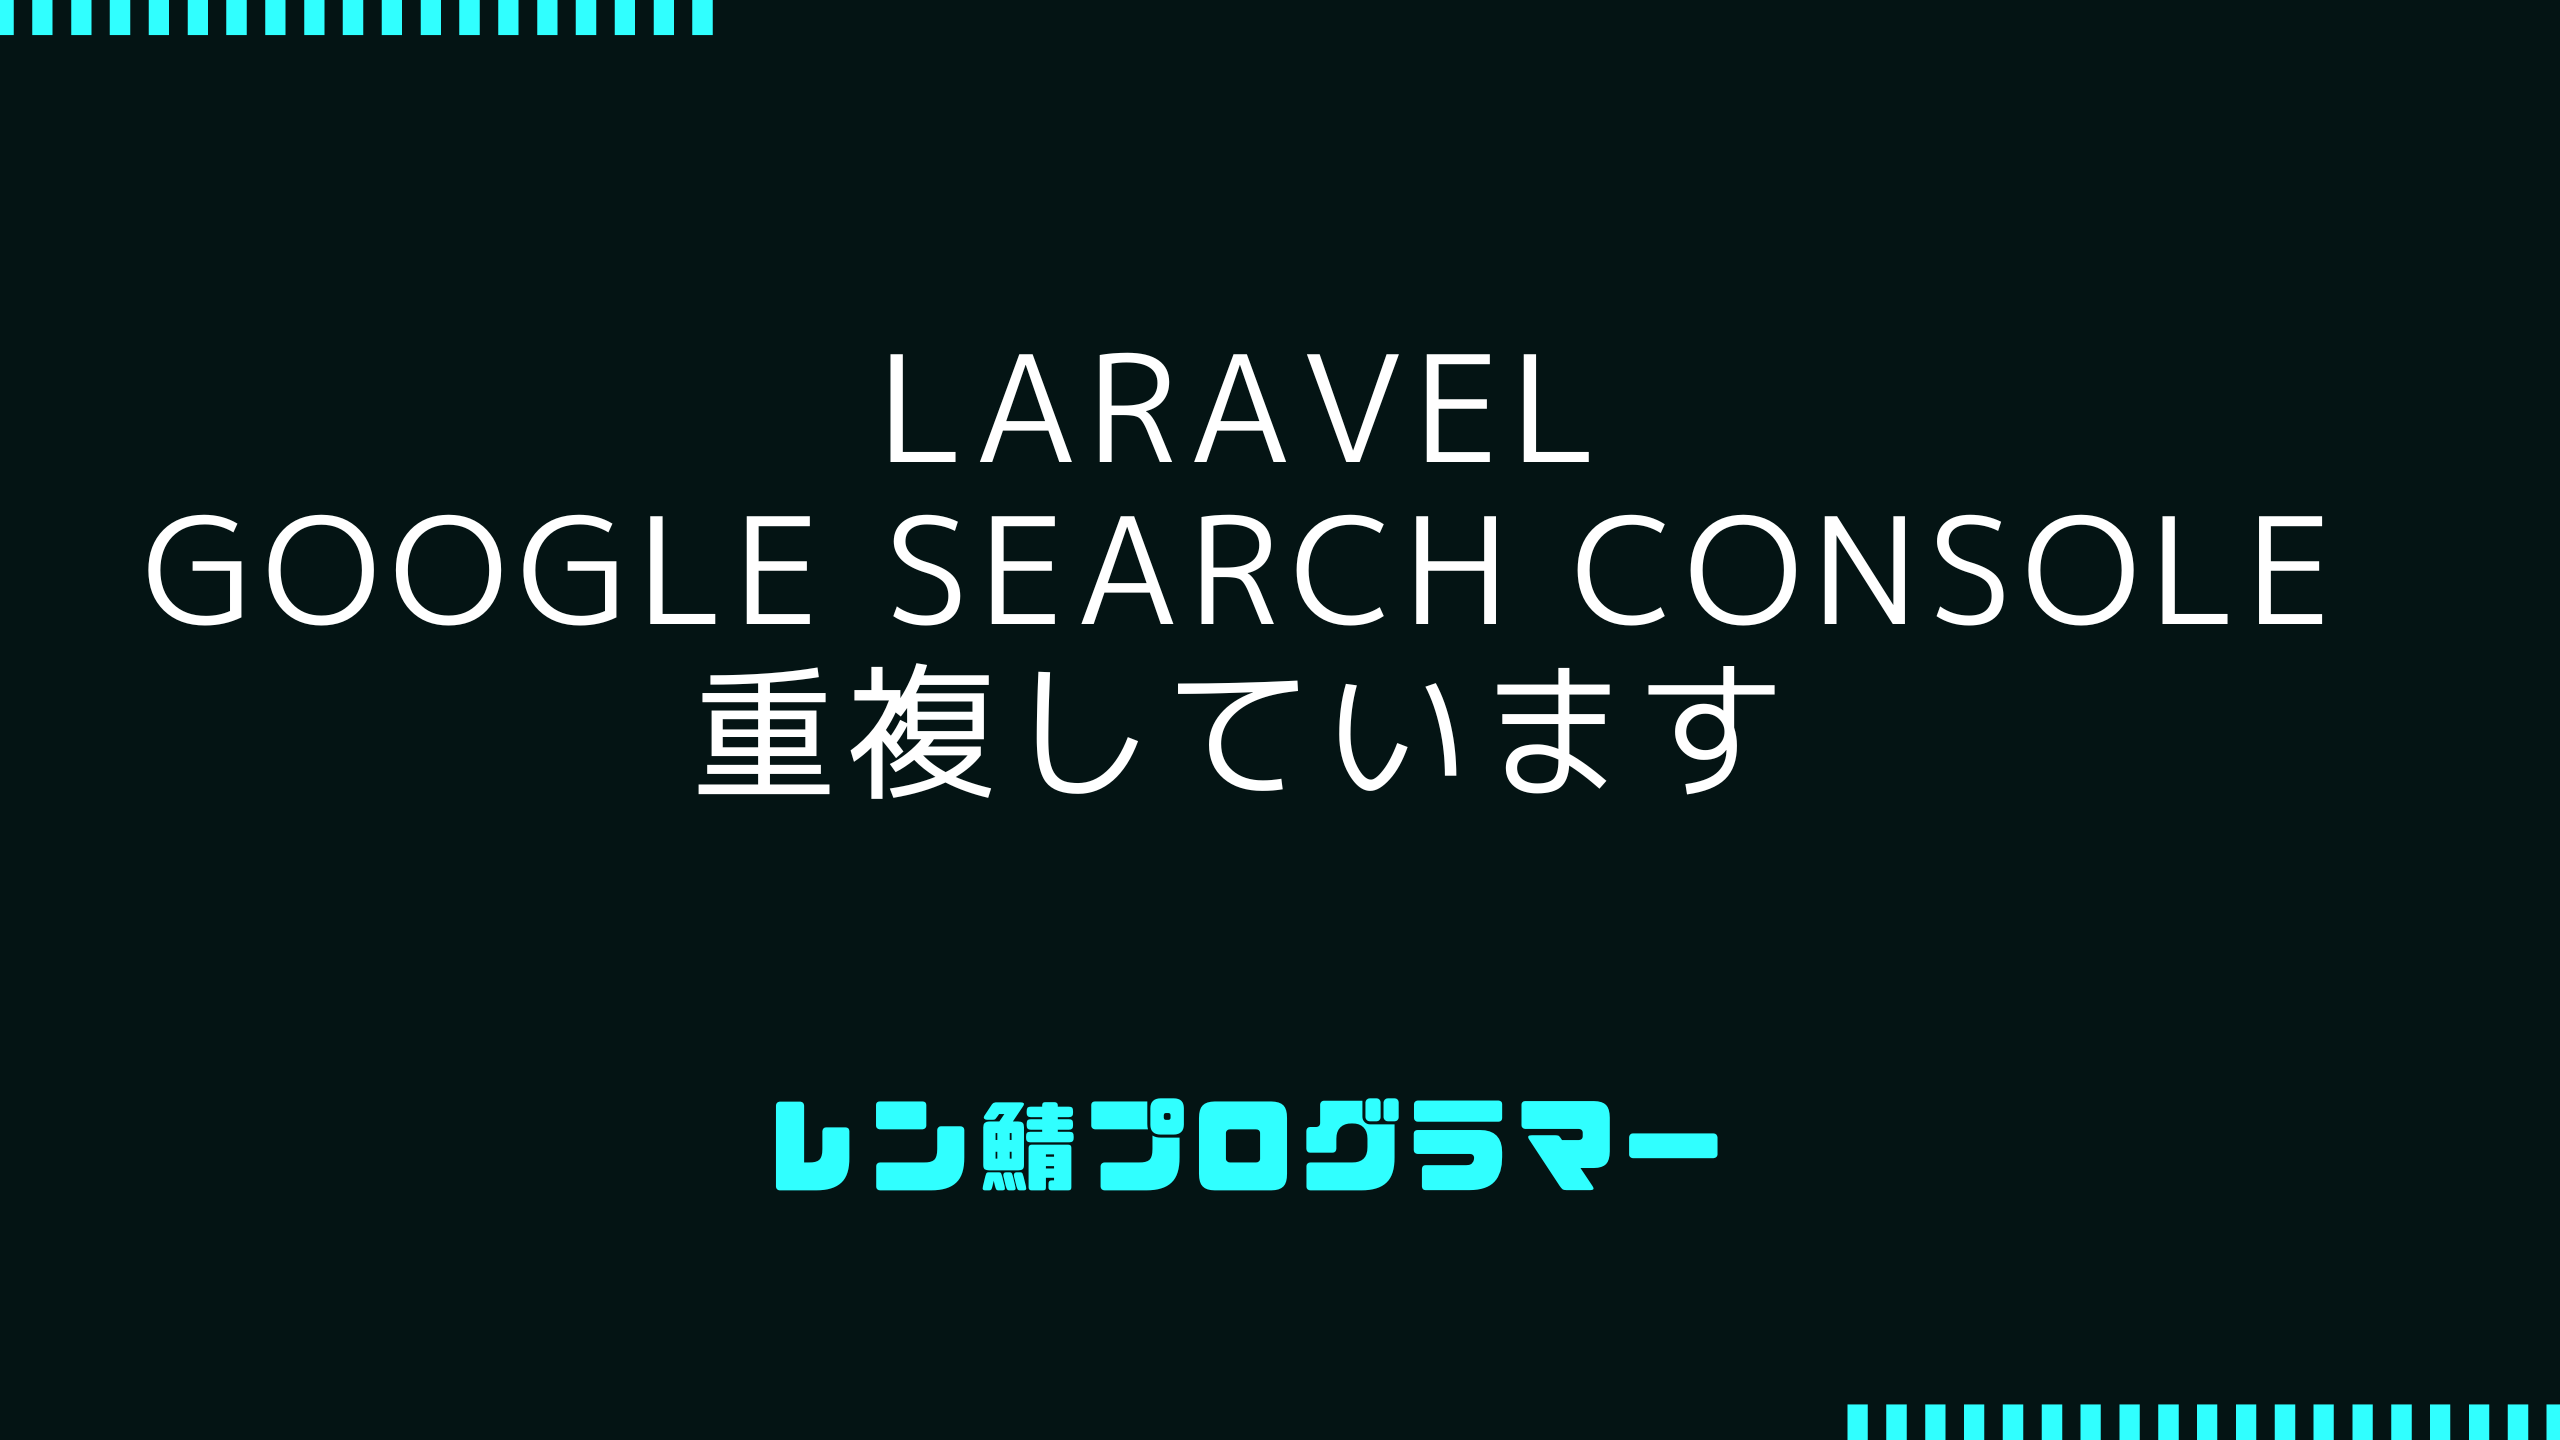 Laravel「重複しています。Google により、ユーザーがマークしたページとは異なるページが正規ページとして選択されました」の対処